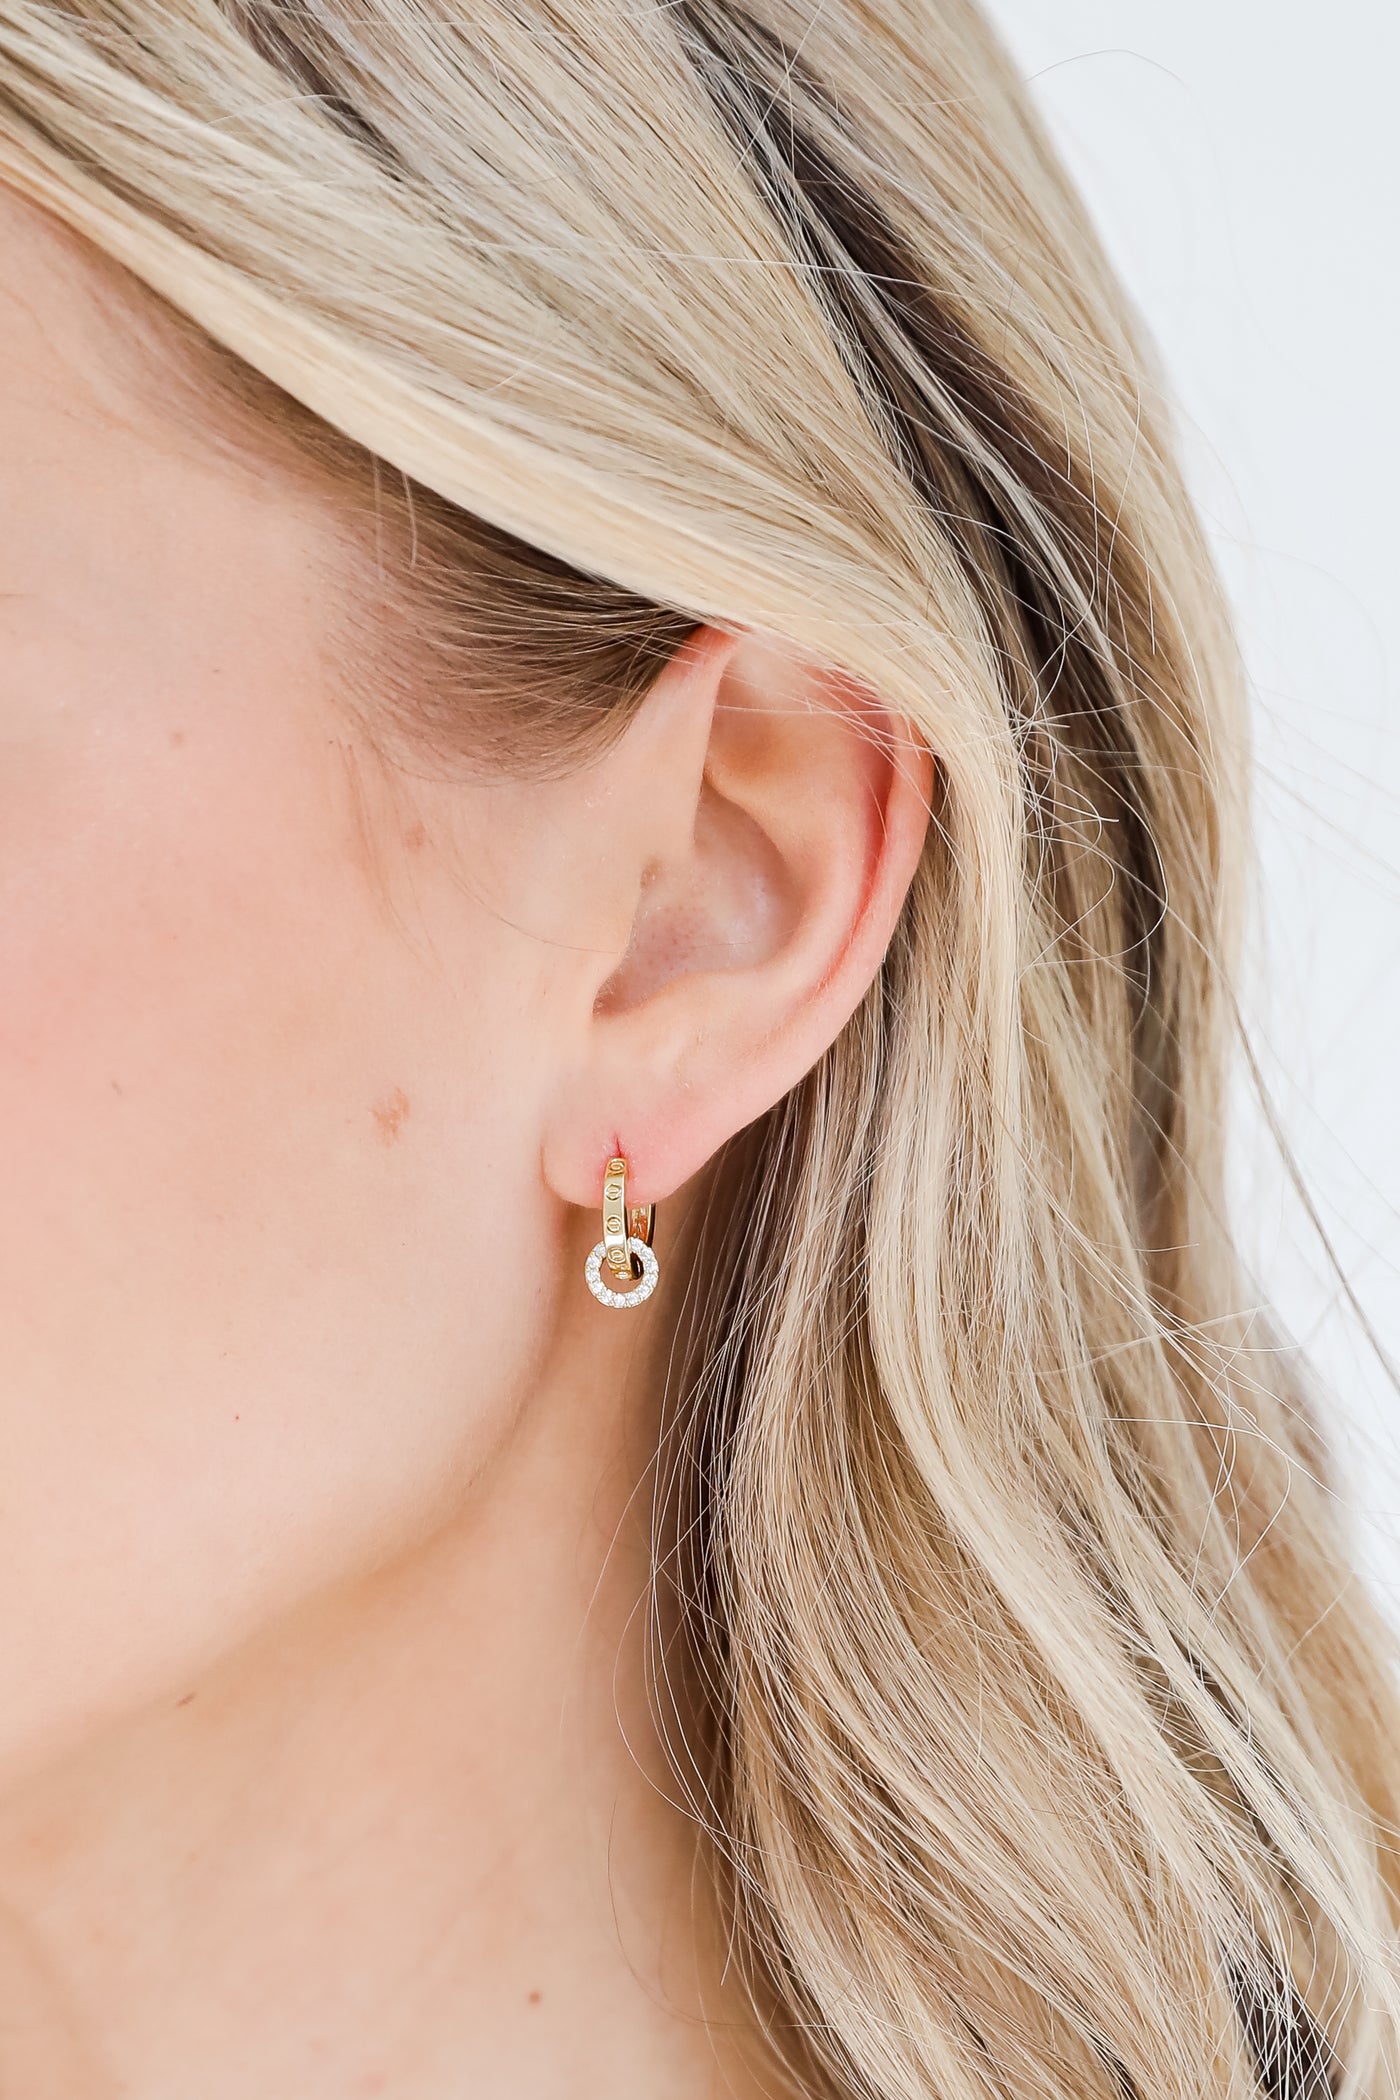 Gold Rhinestone Mini Hoop Earrings